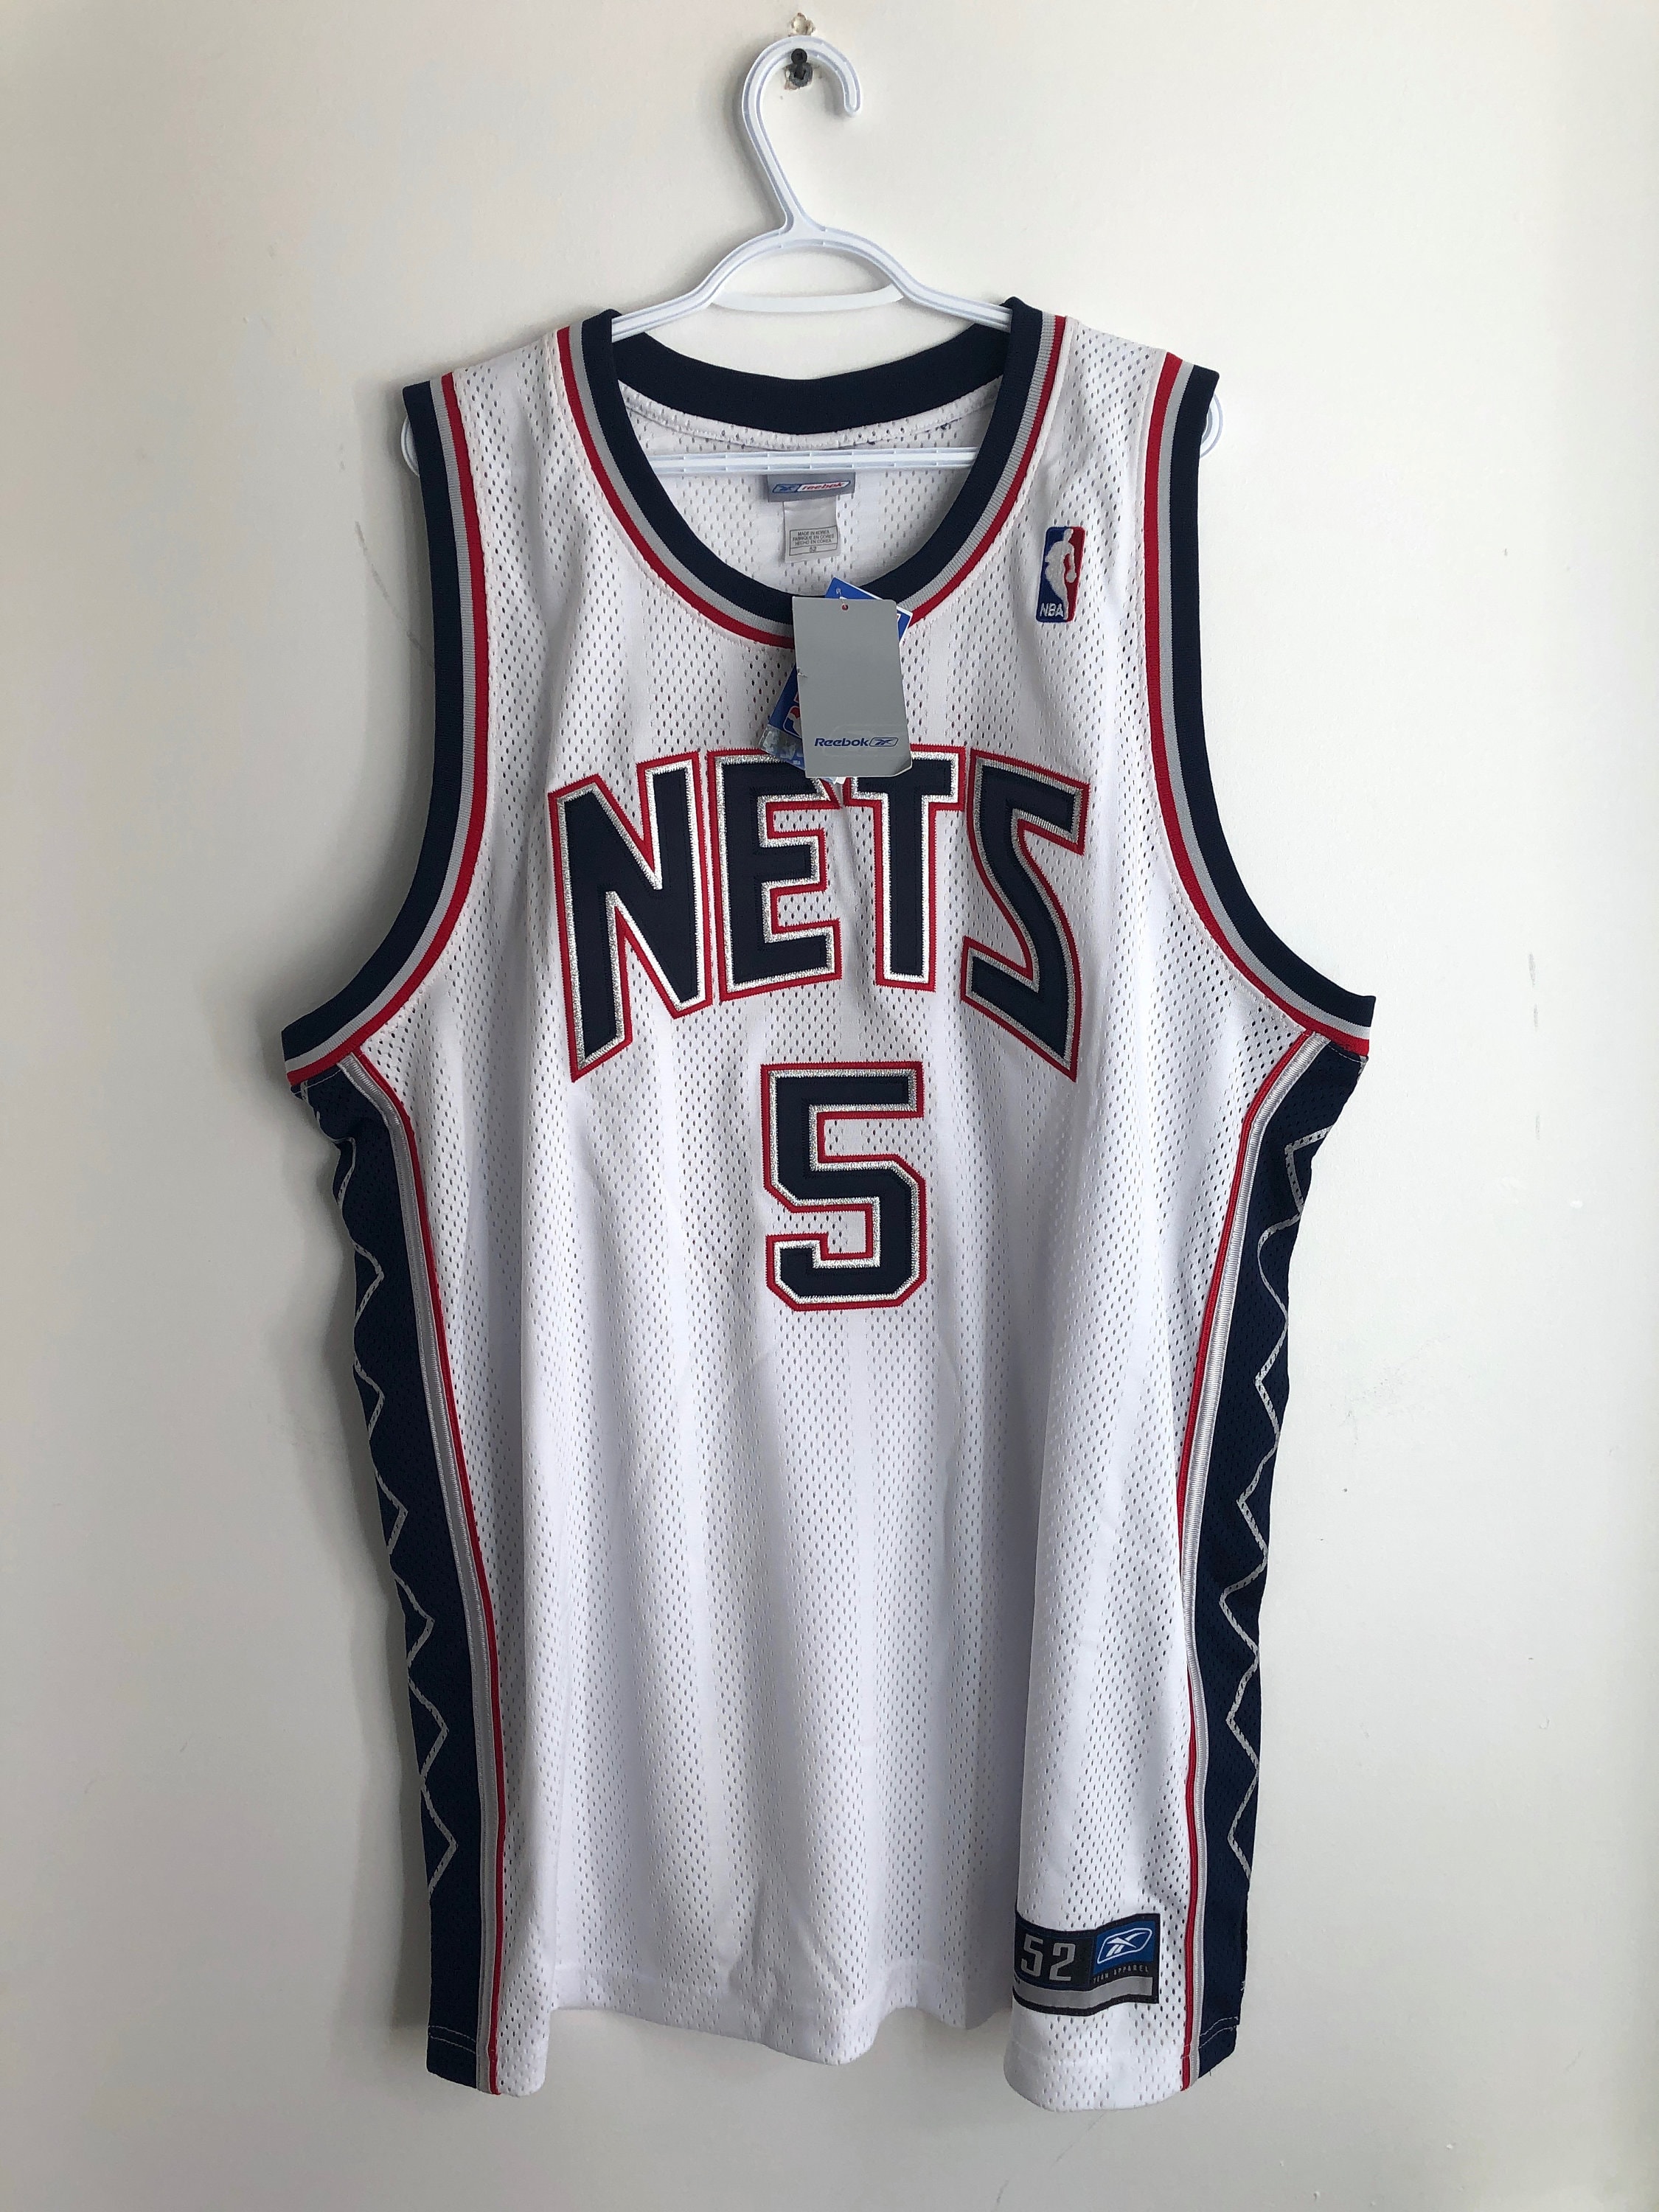 adidas, Shirts, Jason Kidd Nba Jersey New Jersey Nets Authentic Jersey  Size 52 Fits Like 48